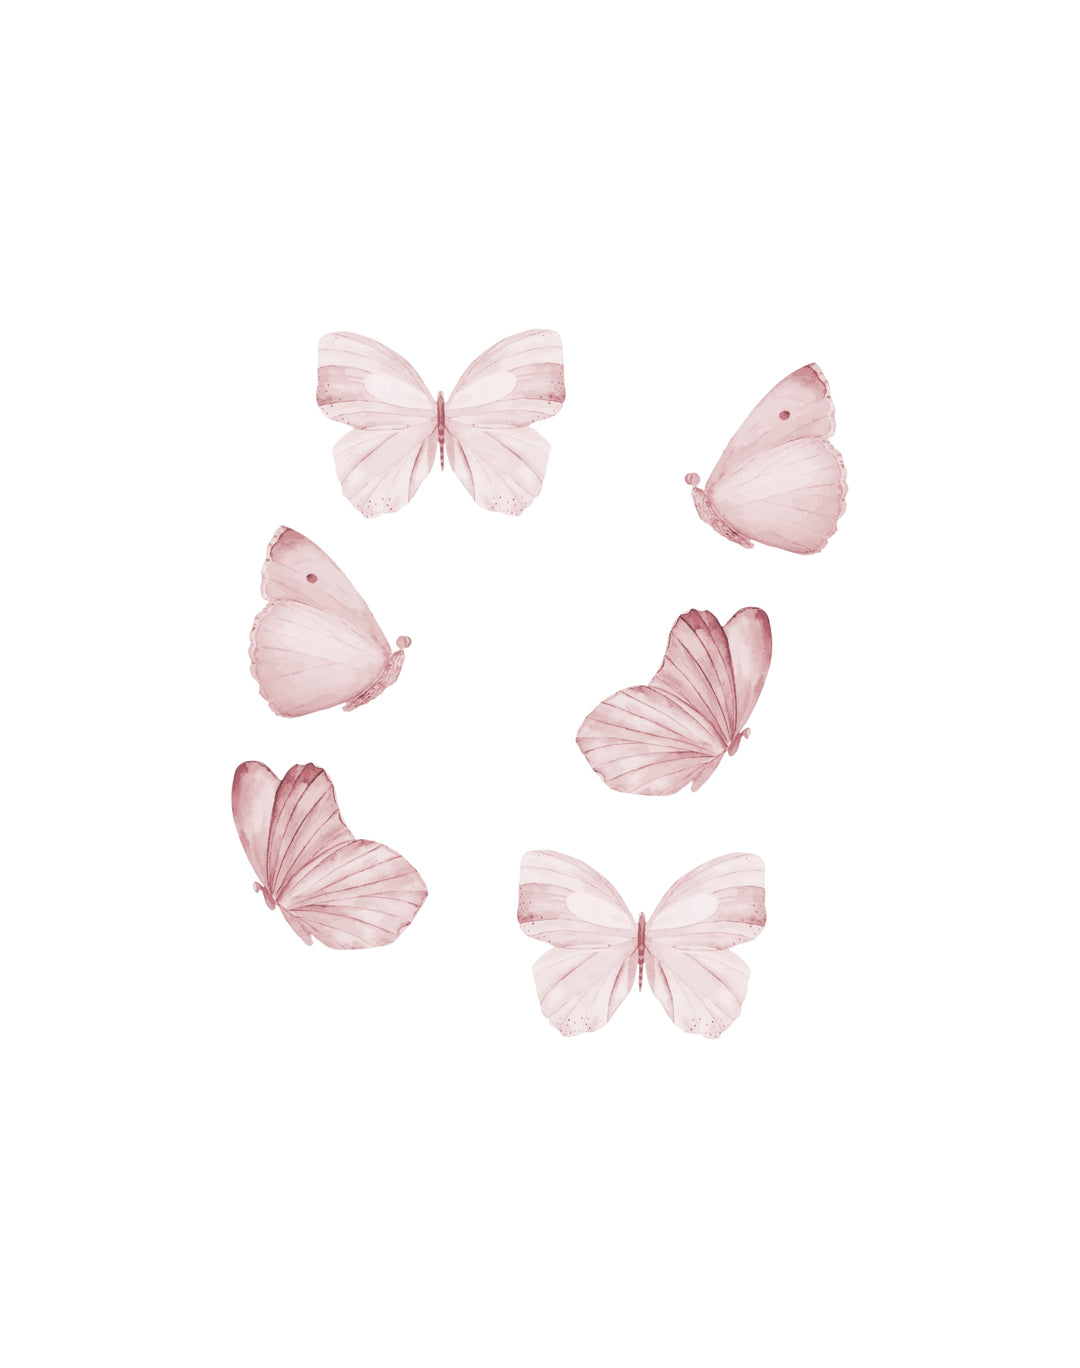 That's Mine Wallsticker Butterflies 6 pcs. - Rose - 100% Textile foil Buy Bolig & udstyr||Børneværelset||Wallstickers||Nyheder||Alle||Favoritter here.